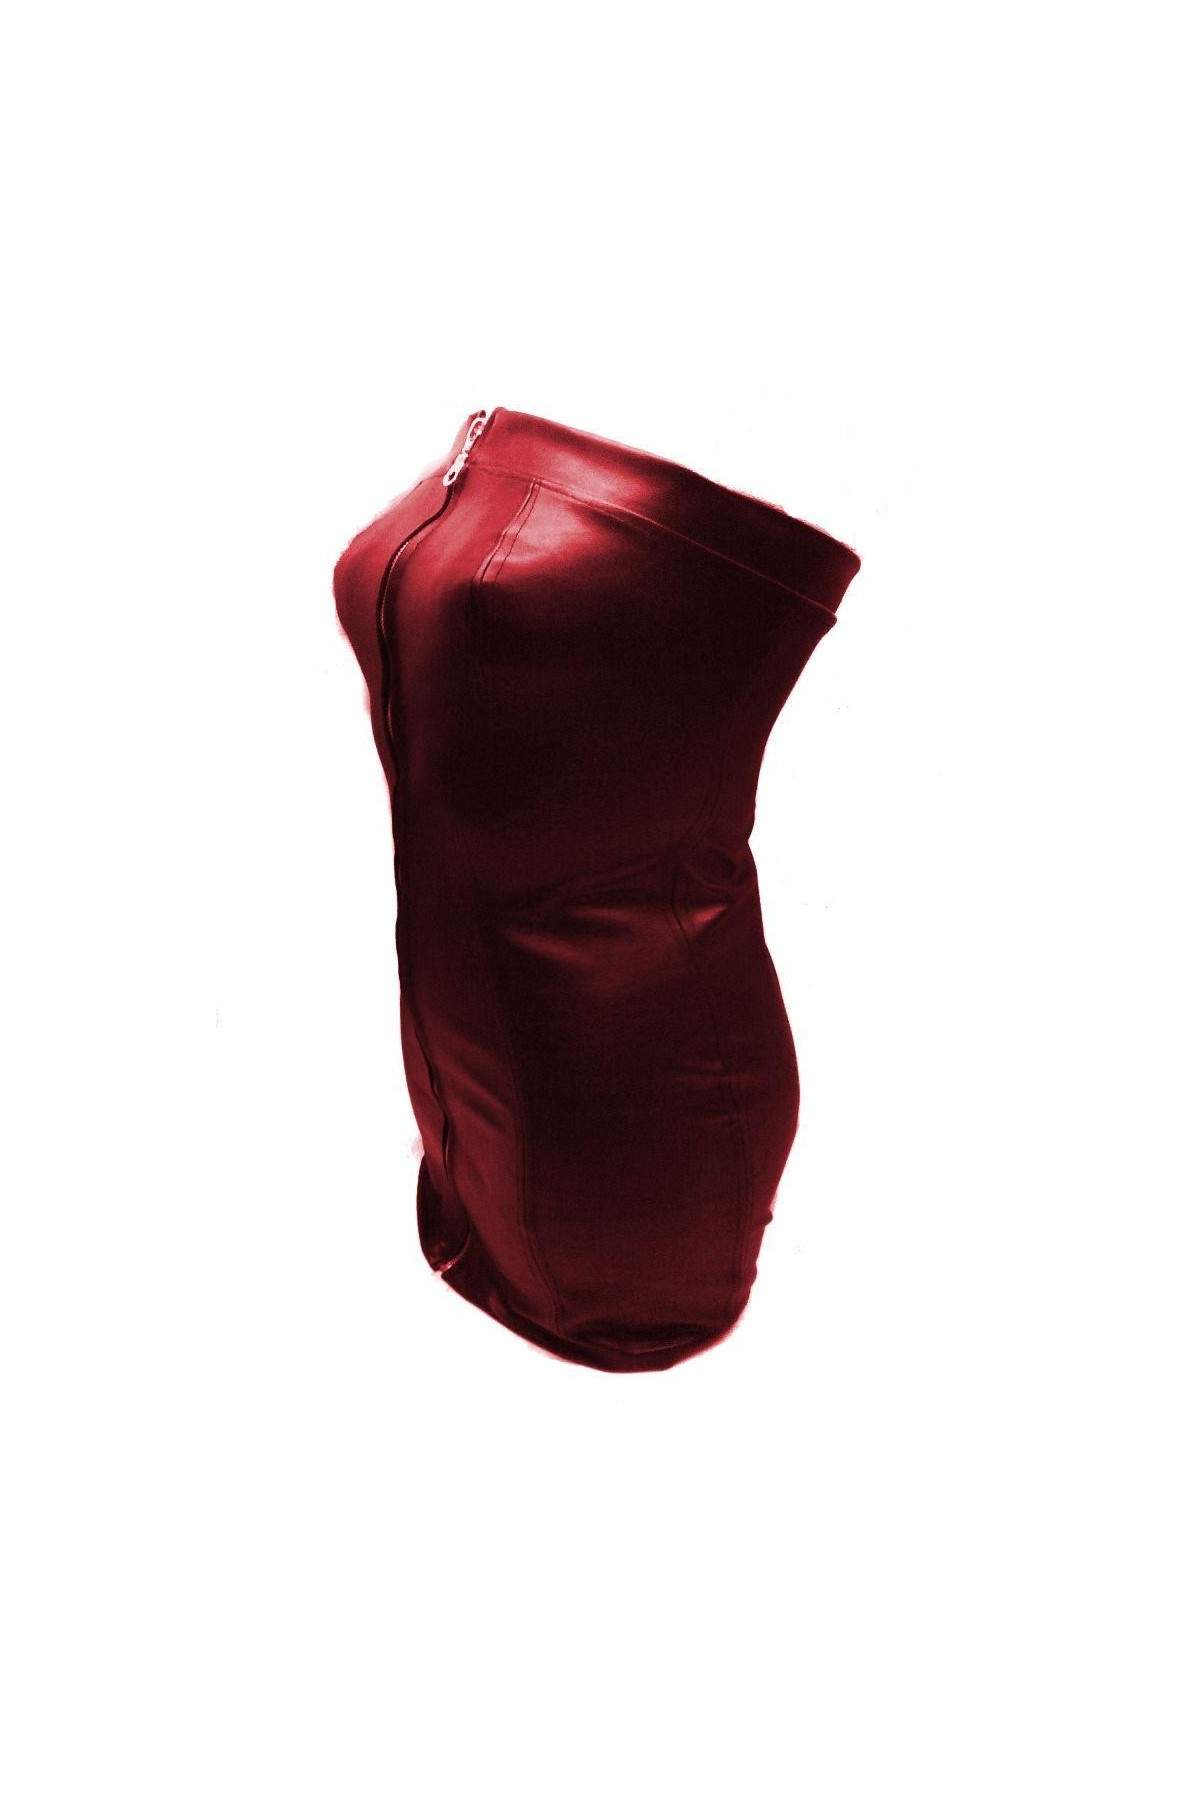 Kauf auf Rechnung Softes Designer Leder Kleid rot Größe L - XXL (44... - 